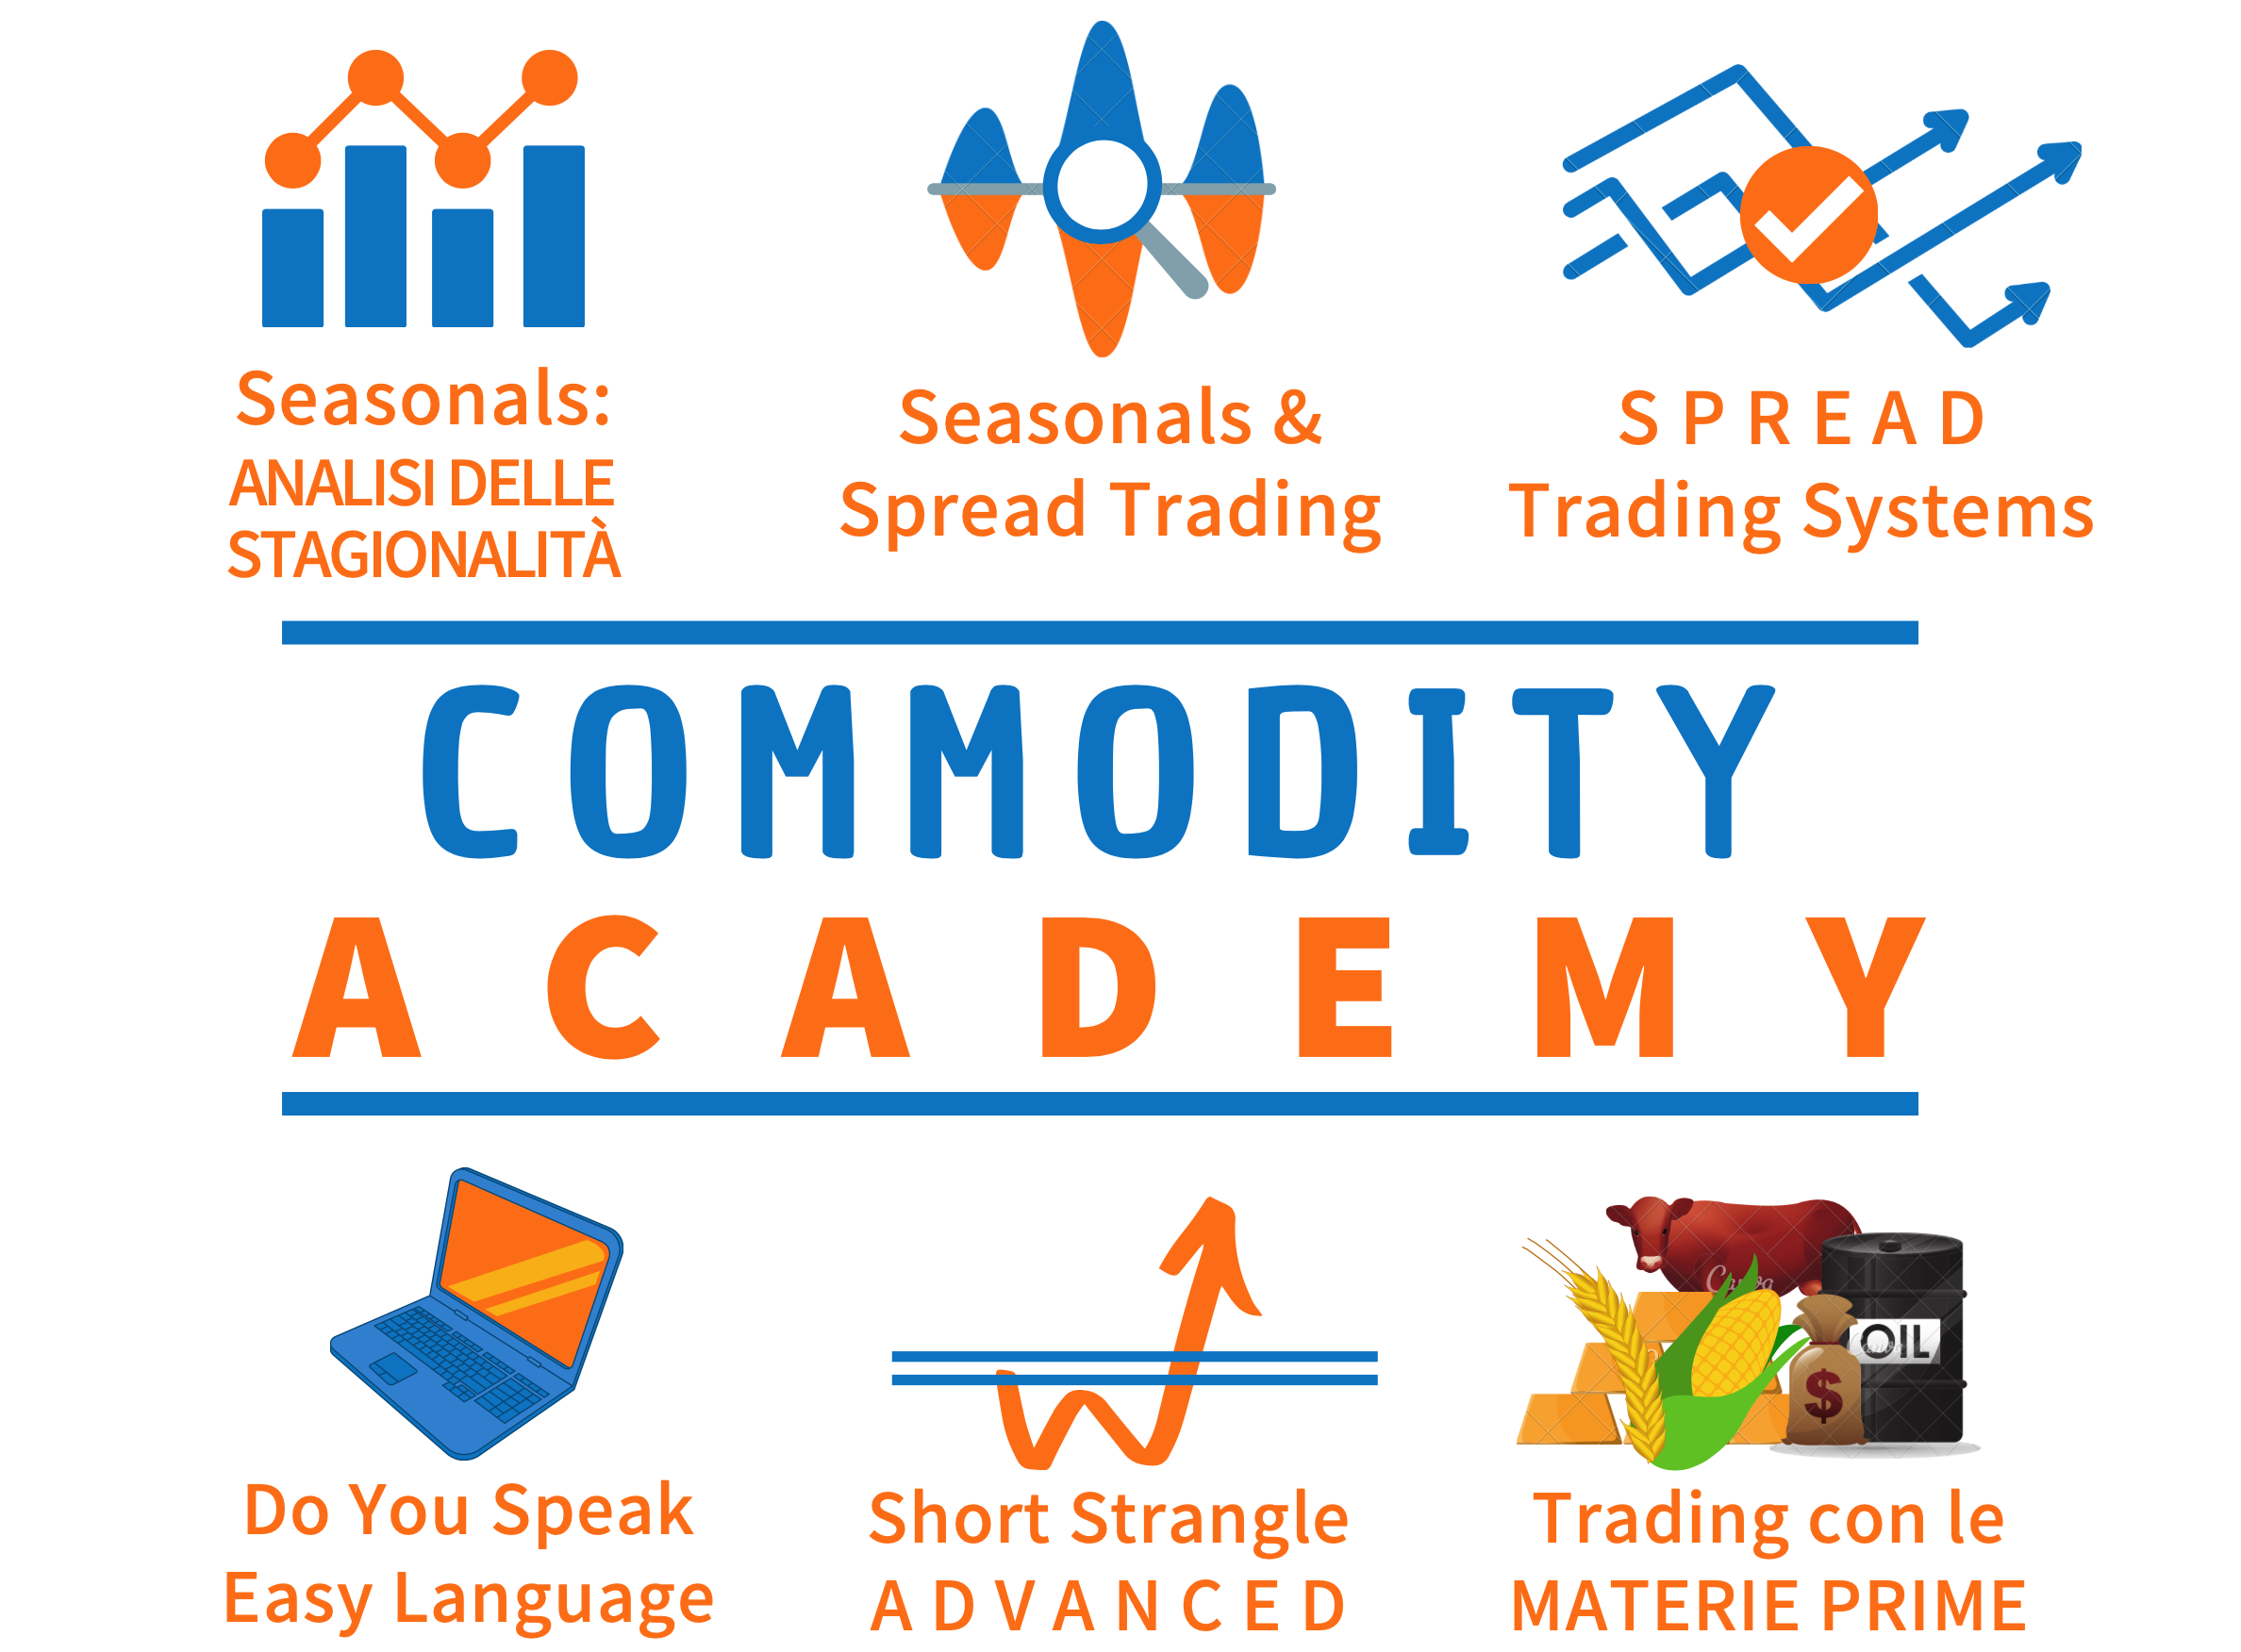 Commodities Trading Academy: Il corso sulle Commodities più completo d'Italia, tratteremo i Fondamentali, le Stagionalità, Trading System e i Grafici spread 